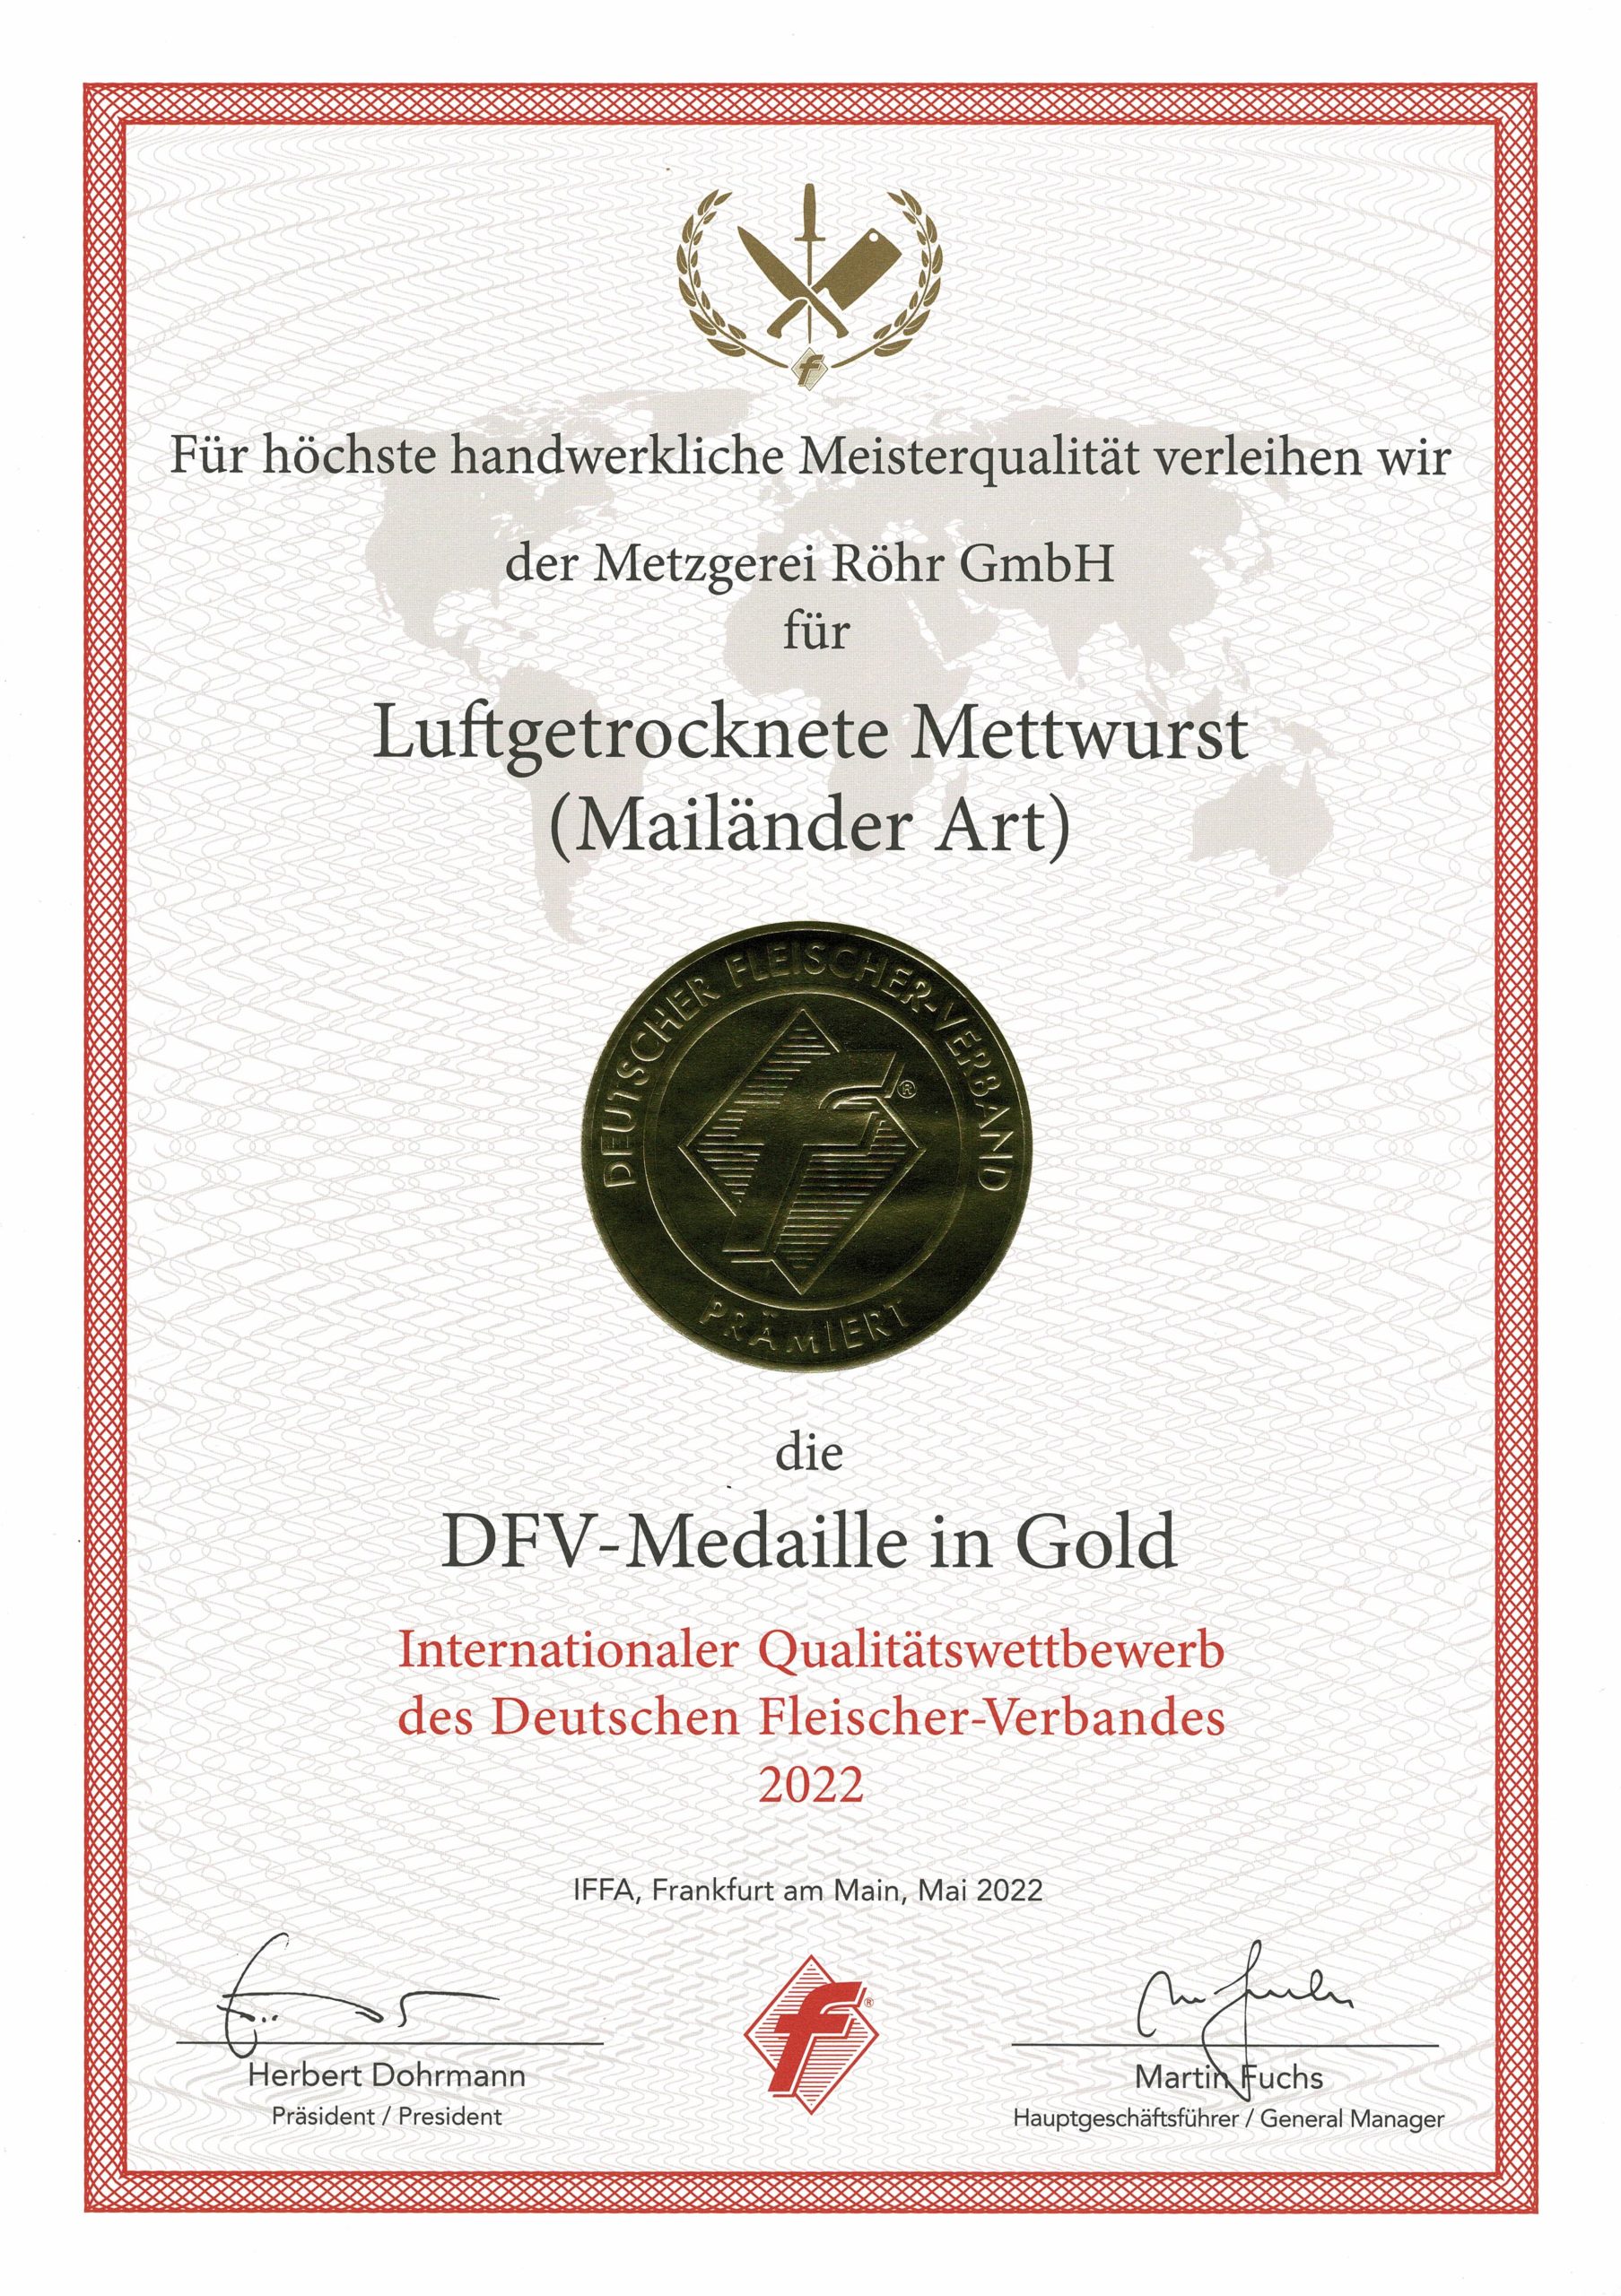 DFV-Medaille in Gold für Luftgetrocknete Mettwurst